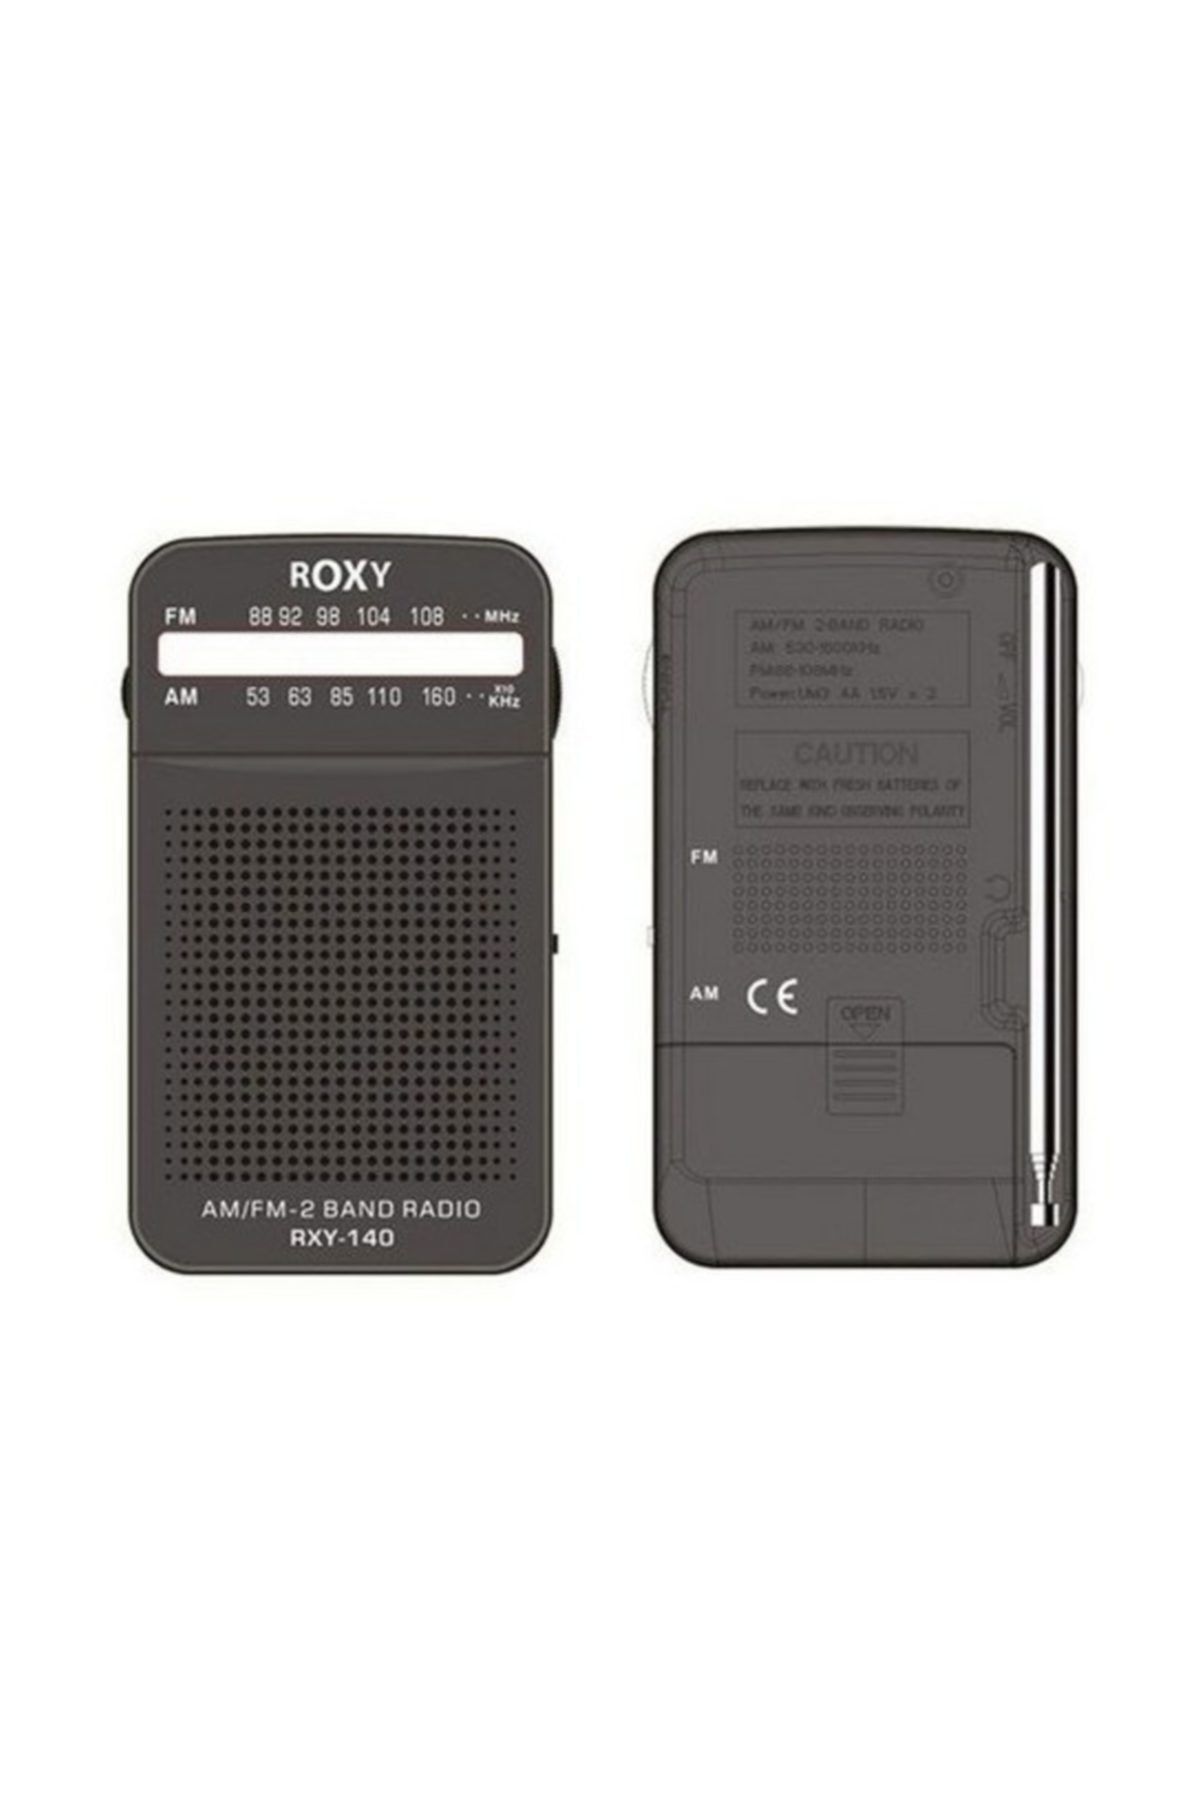 Roxy Rxy-140 Fm Cep Radyosu